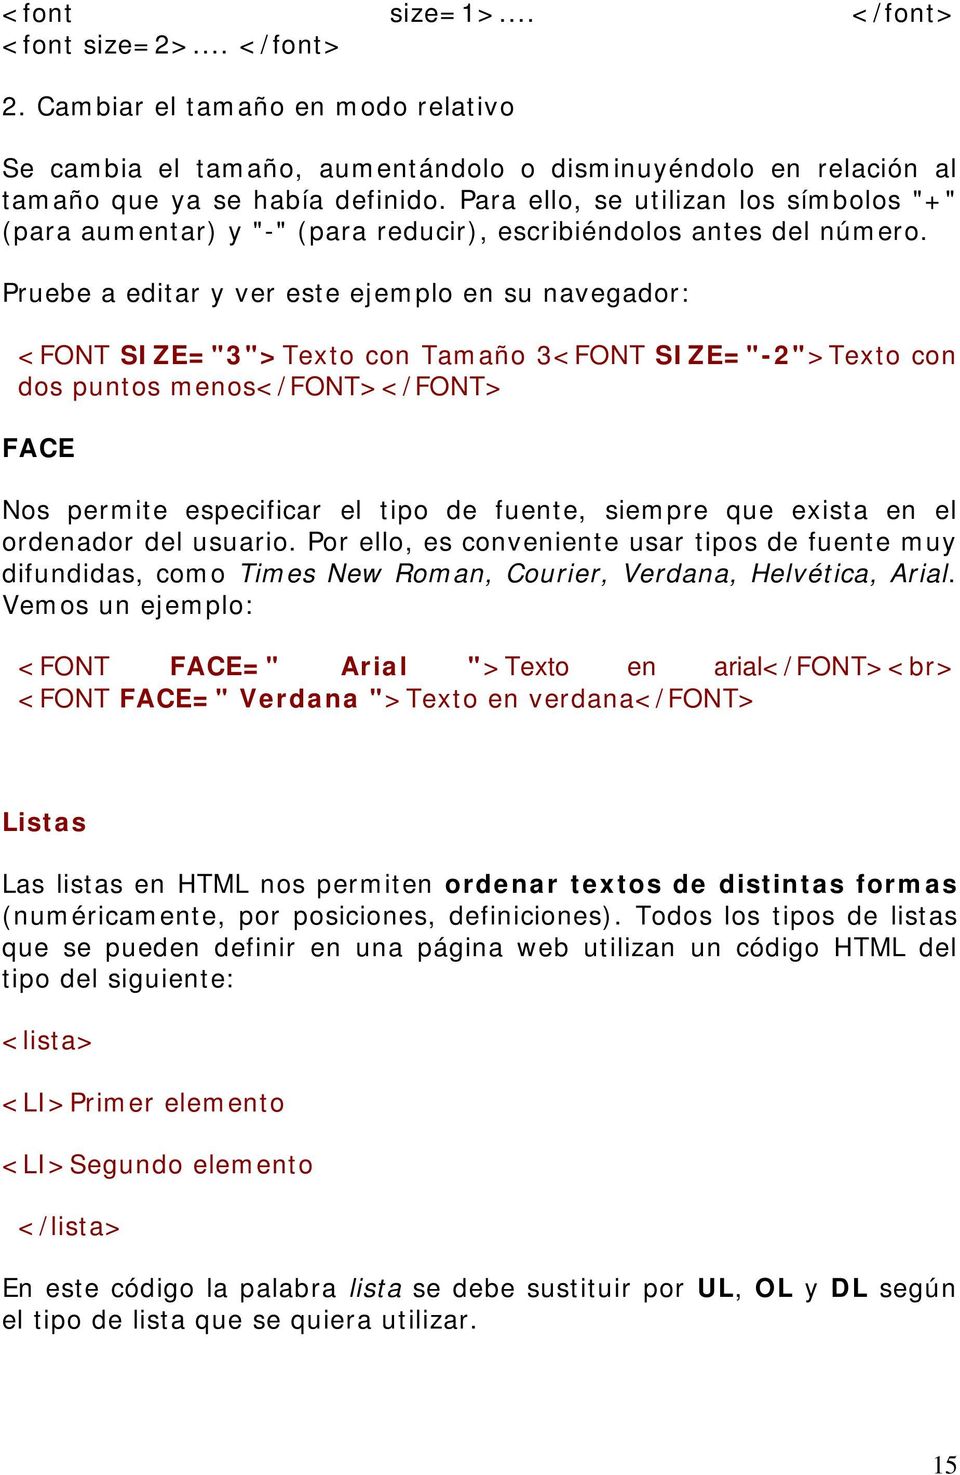 Pruebe a editar y ver este ejemplo en su navegador: <FONT SIZE="3">Texto con Tamaño 3<FONT SIZE="-2">Texto con dos puntos menos</font></font> FACE Nos permite especificar el tipo de fuente, siempre